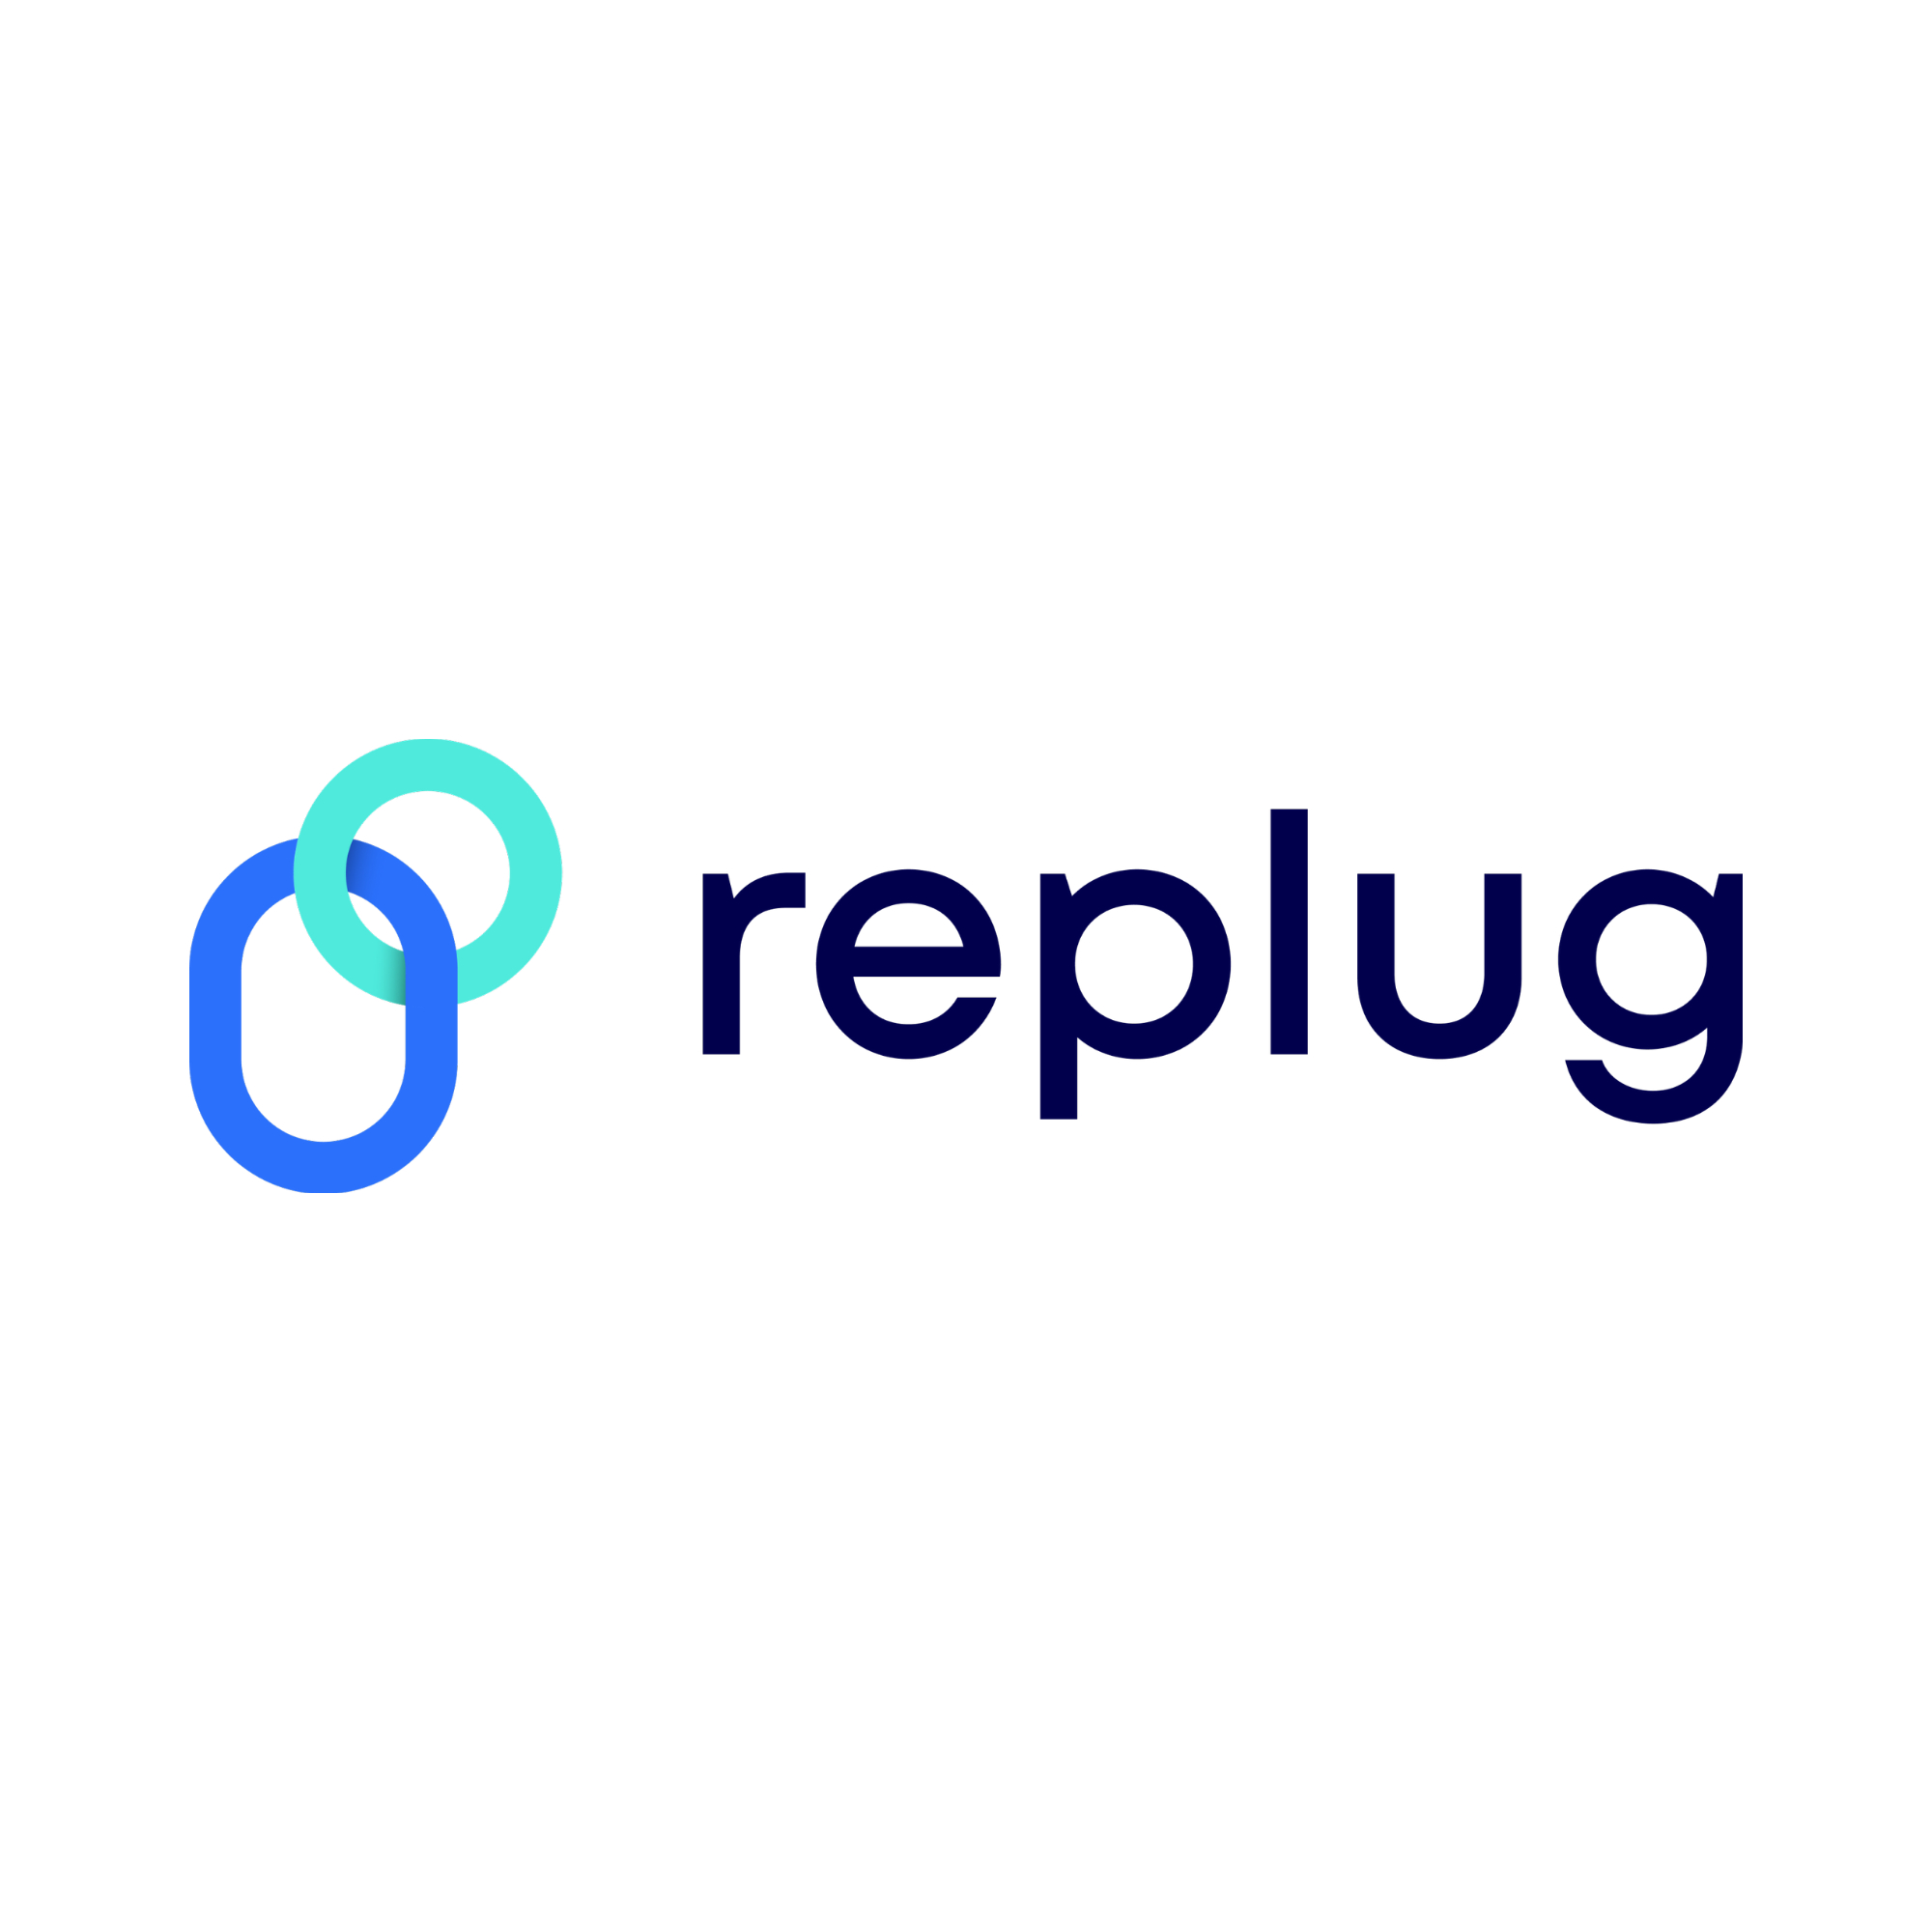 Replug